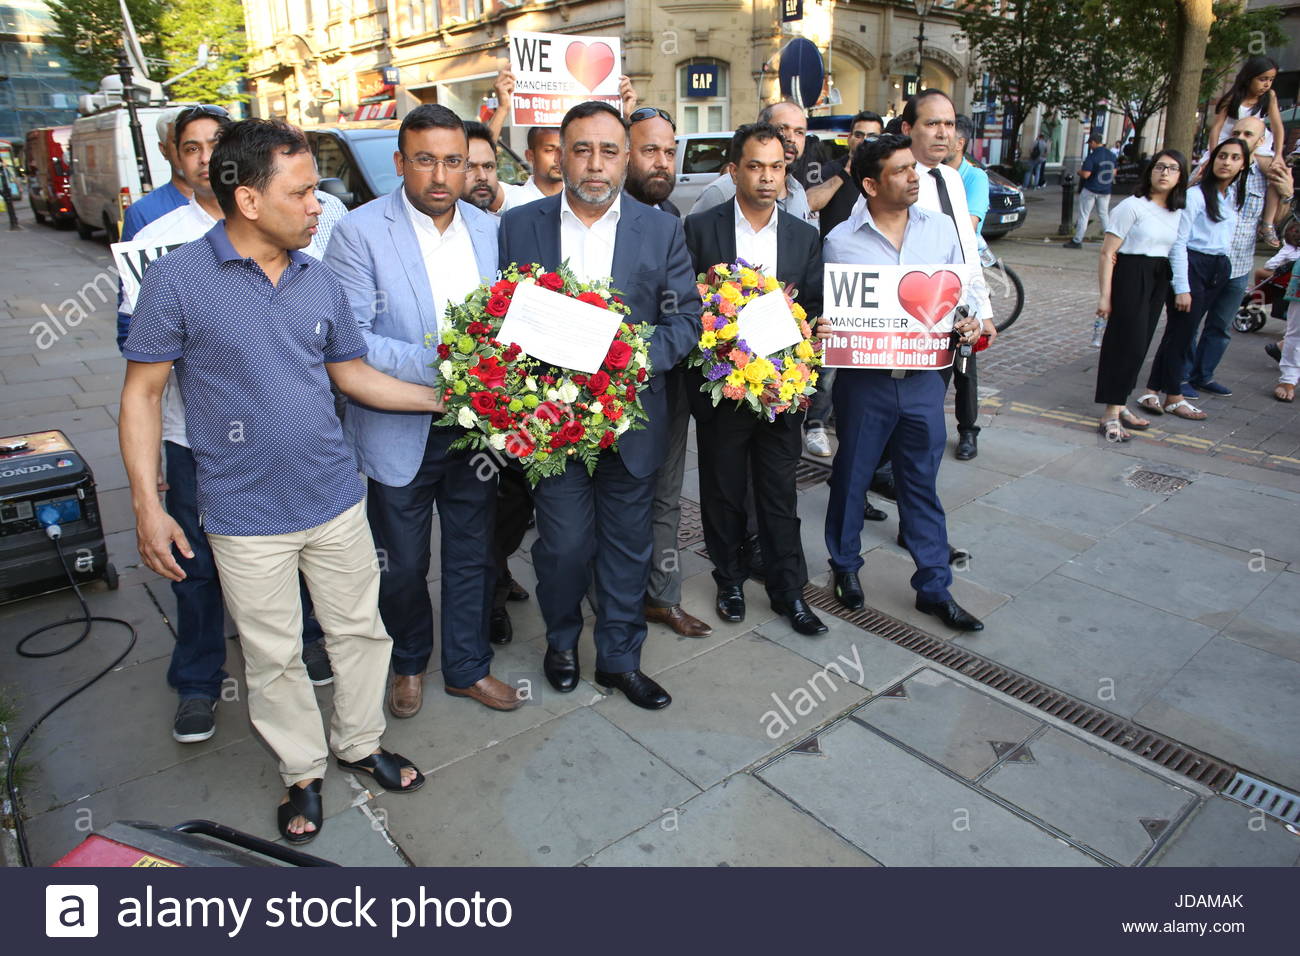 Les membres de la communauté musulmane à Manchester arrivent à St Ann's Square pour déposer des couronnes en l'honneur des victimes de l'attentat à Manchester Banque D'Images